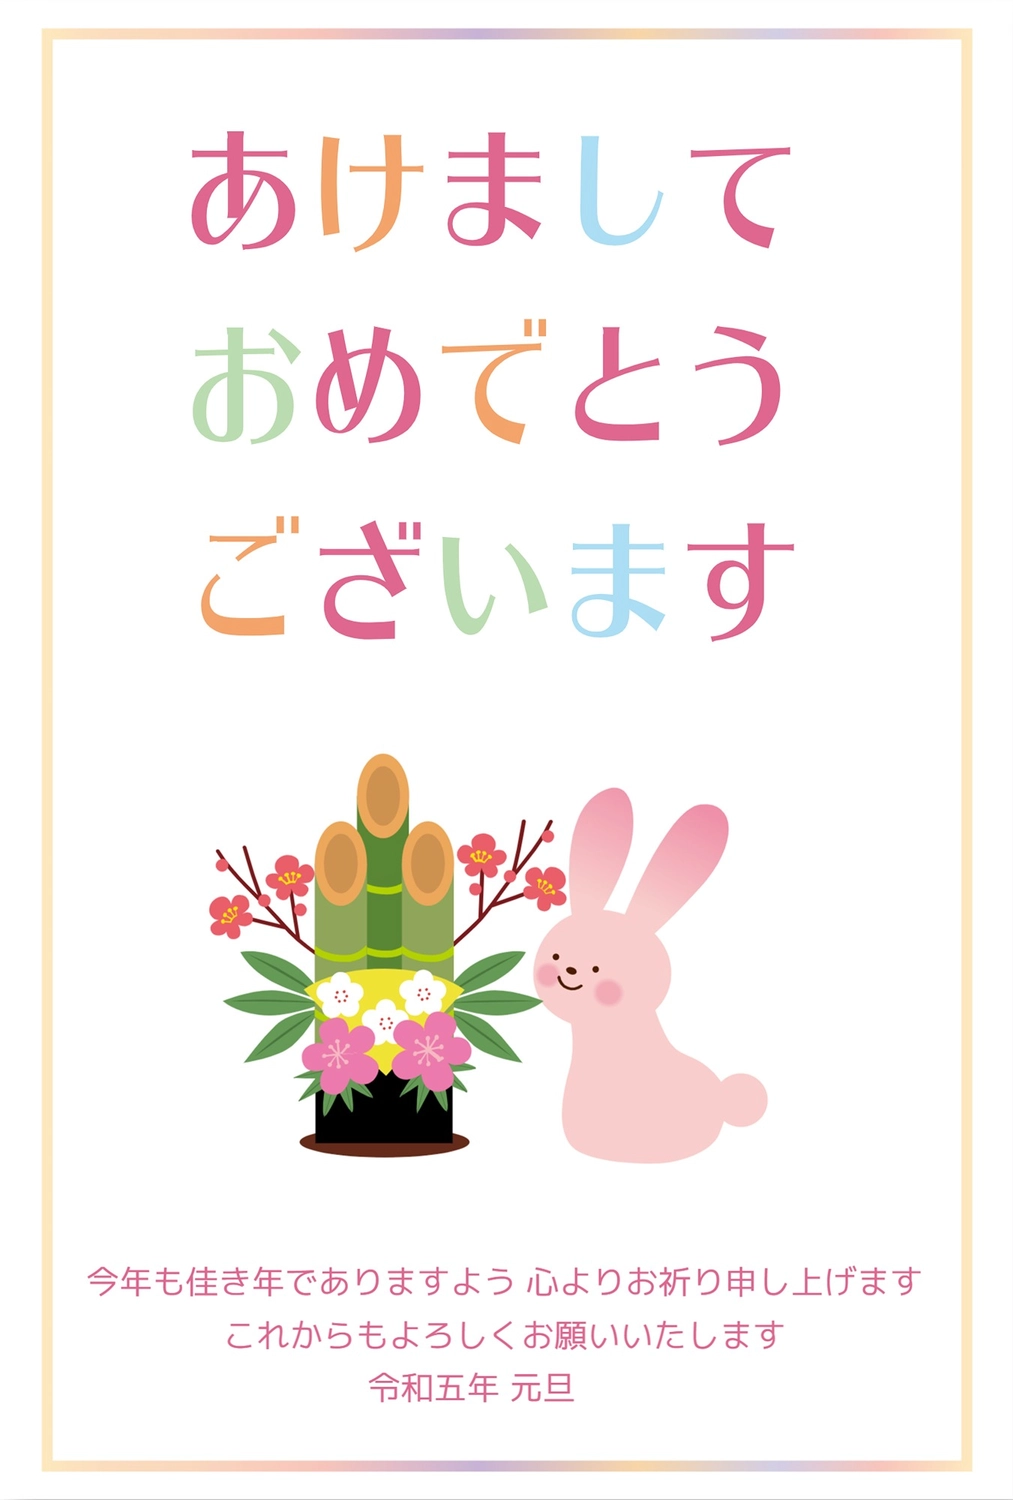 ピンクのウサギと門松, New Year's card, concord, rabbit, New Year Card template